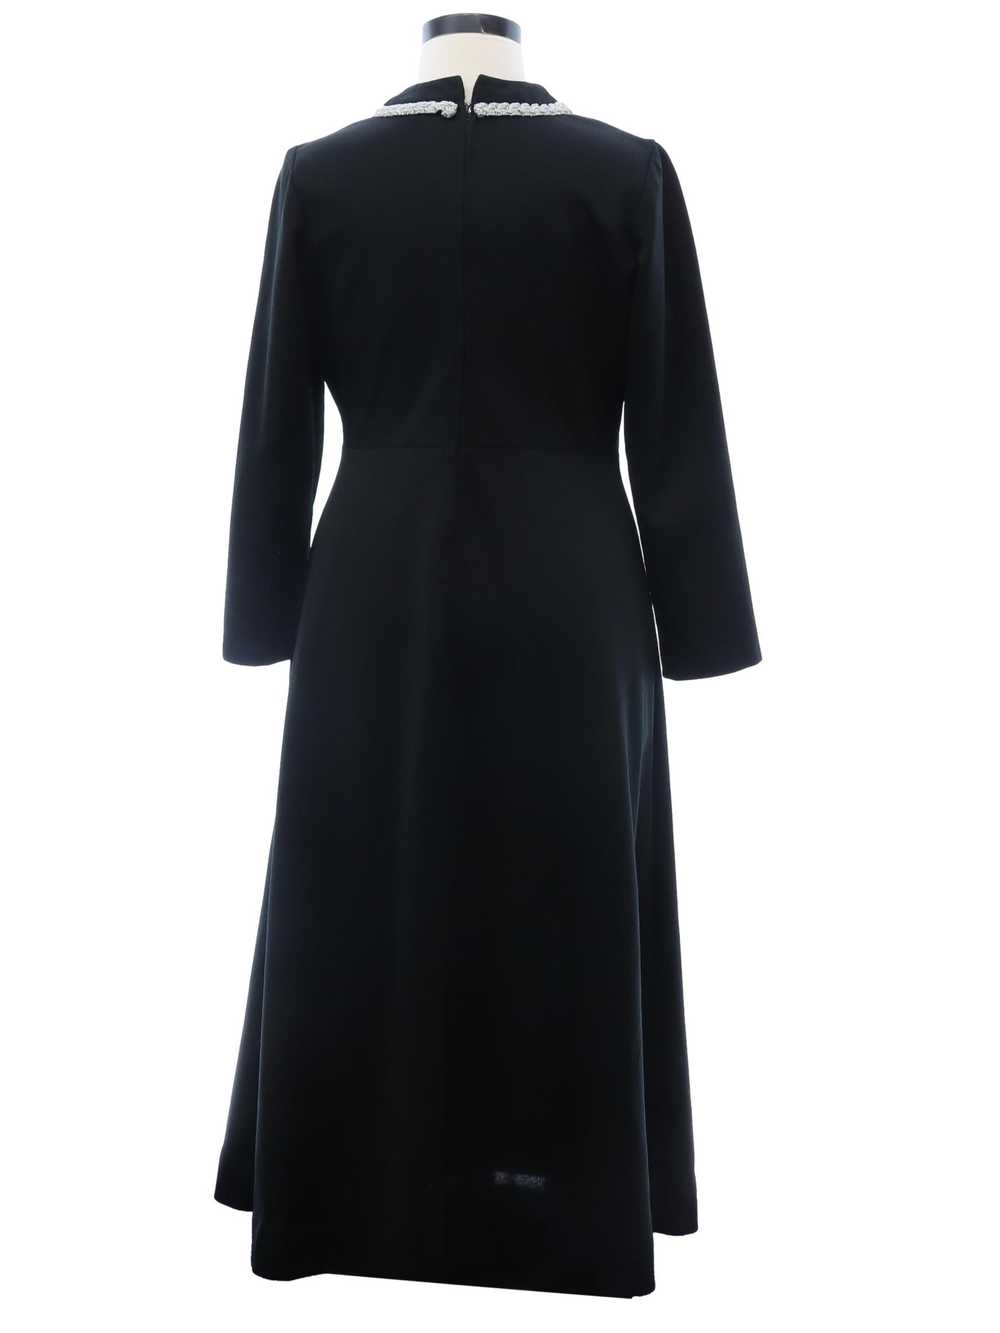 1960's Mod Knit Dress - image 3